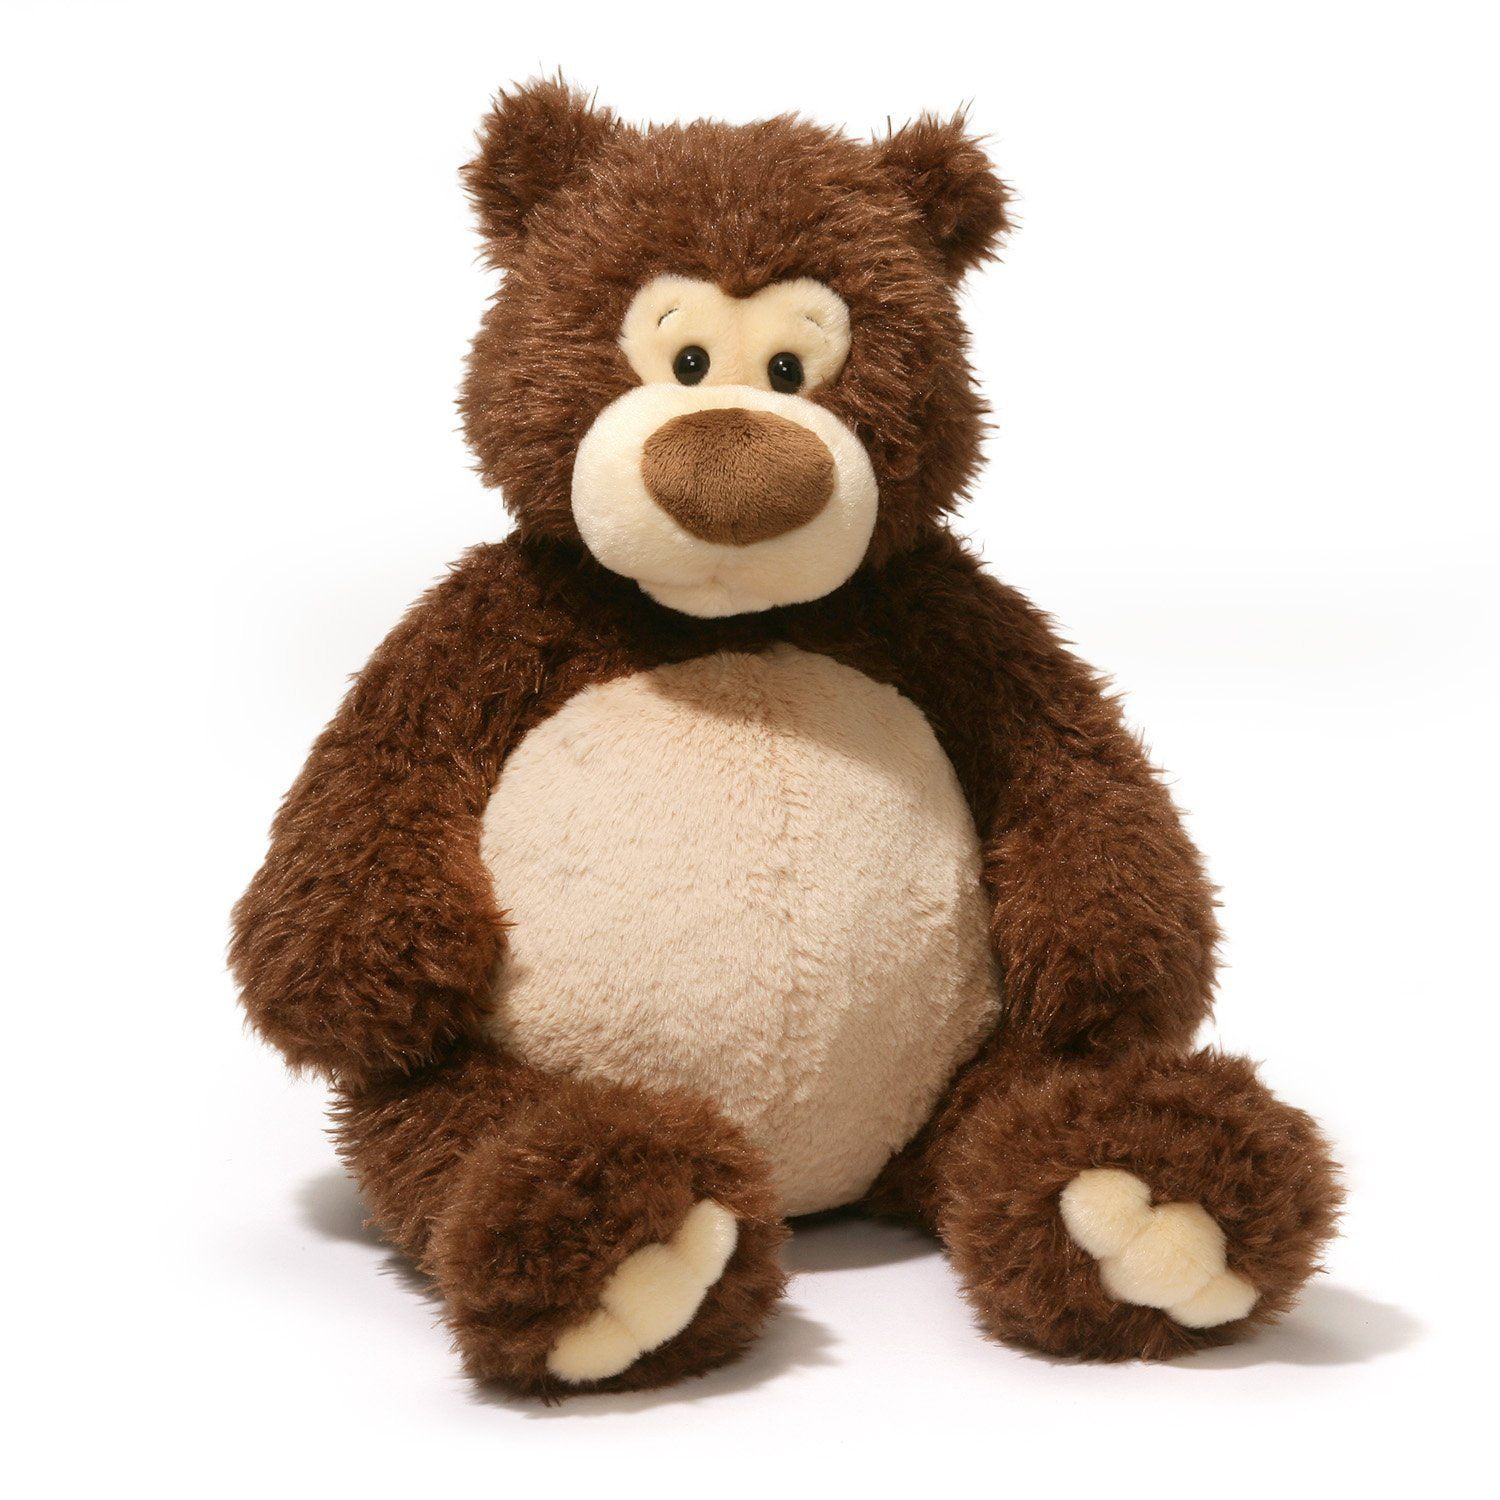 Doyle Bear 20 inch - Teddy Bear by GUND (4056331) - Walmart.com